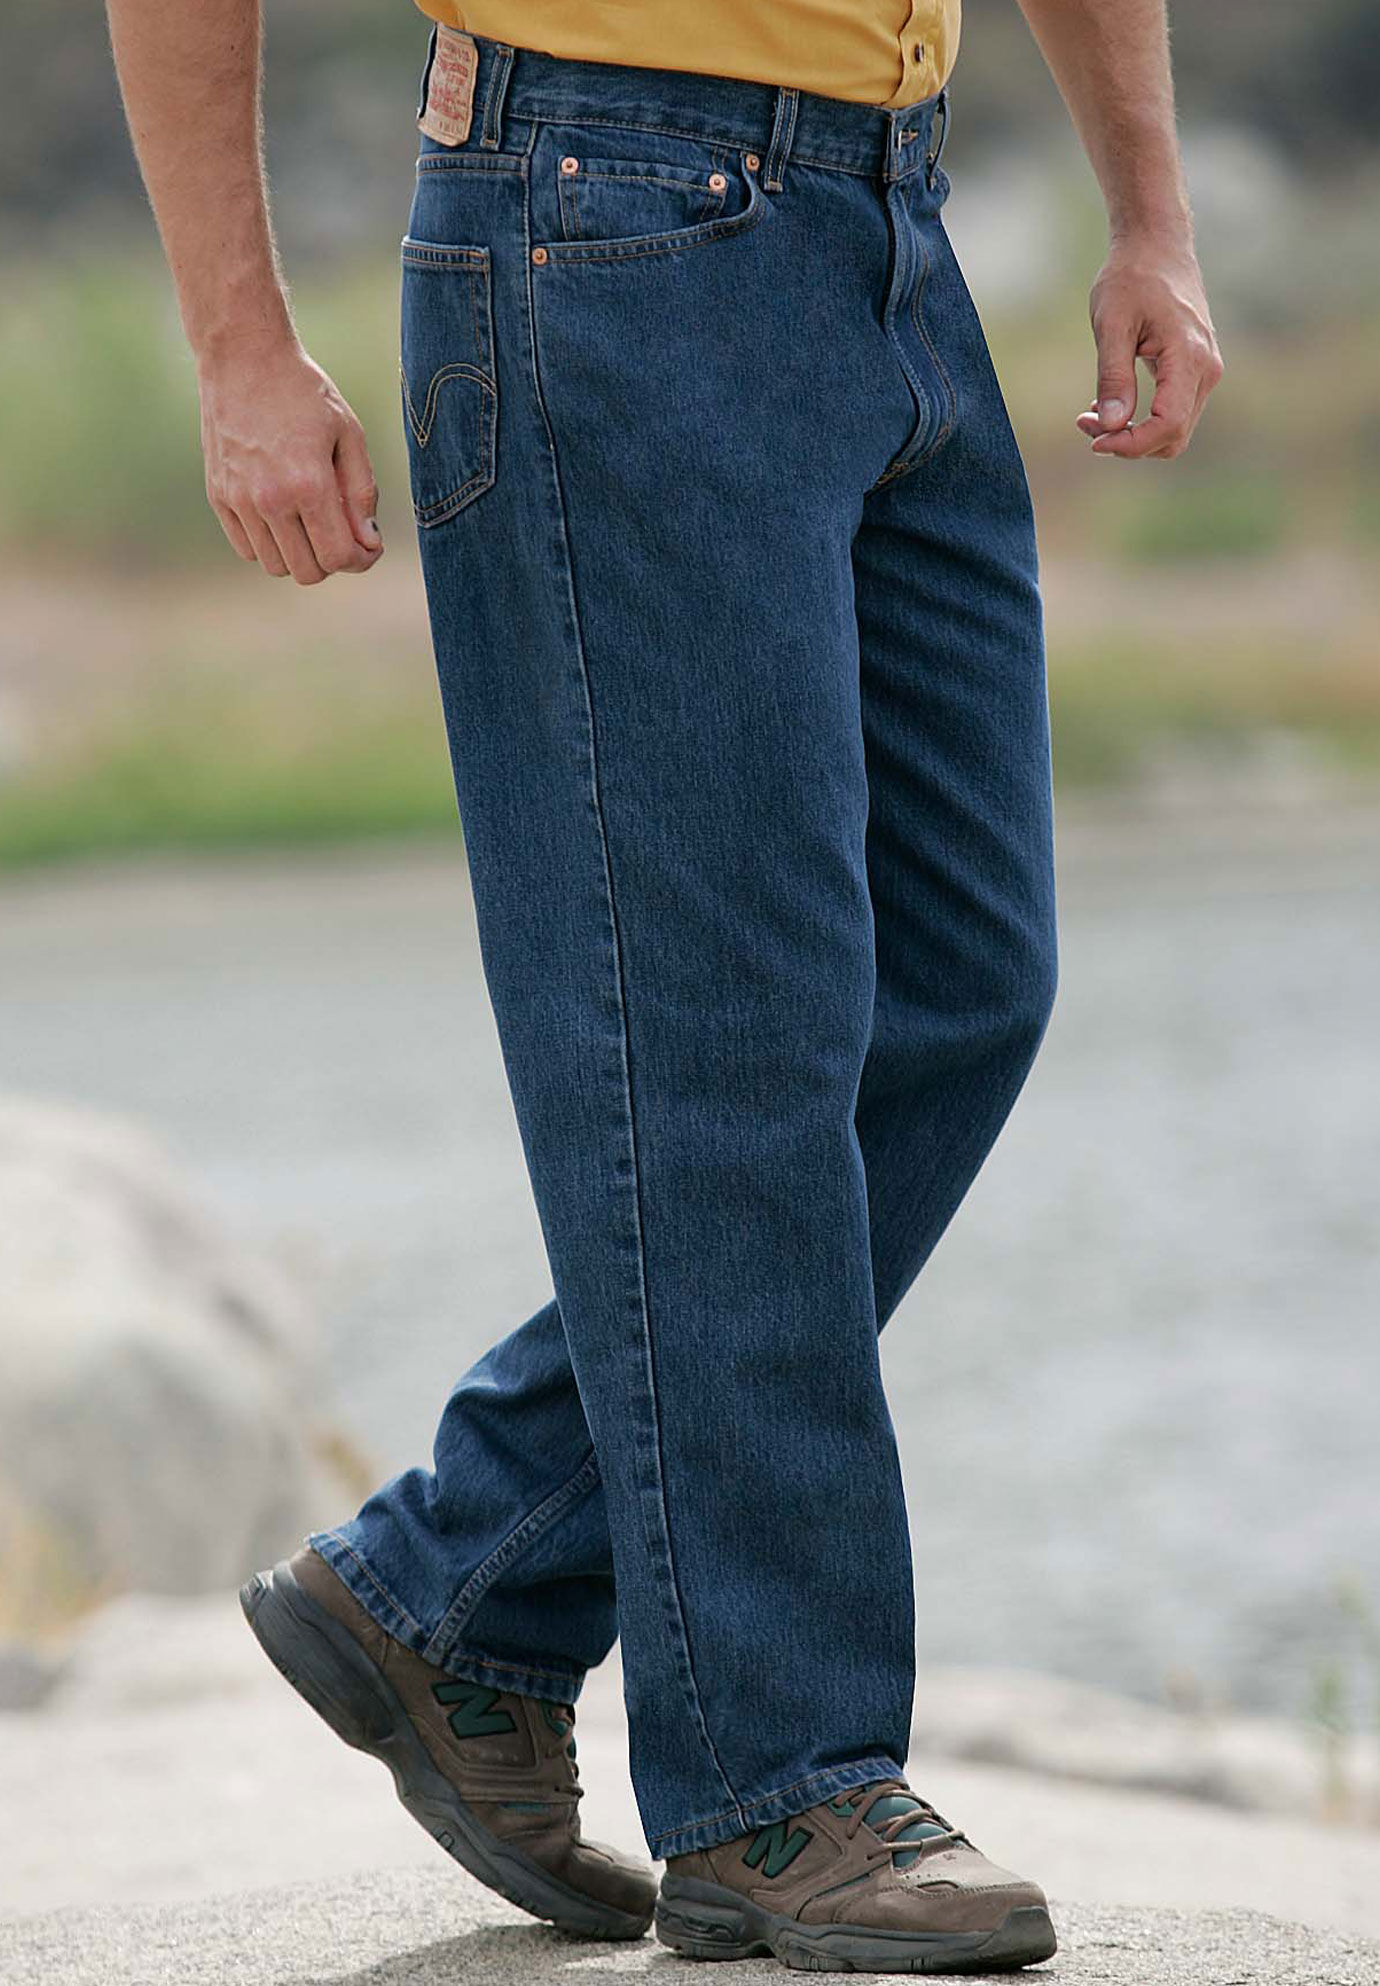 levis jeans 550